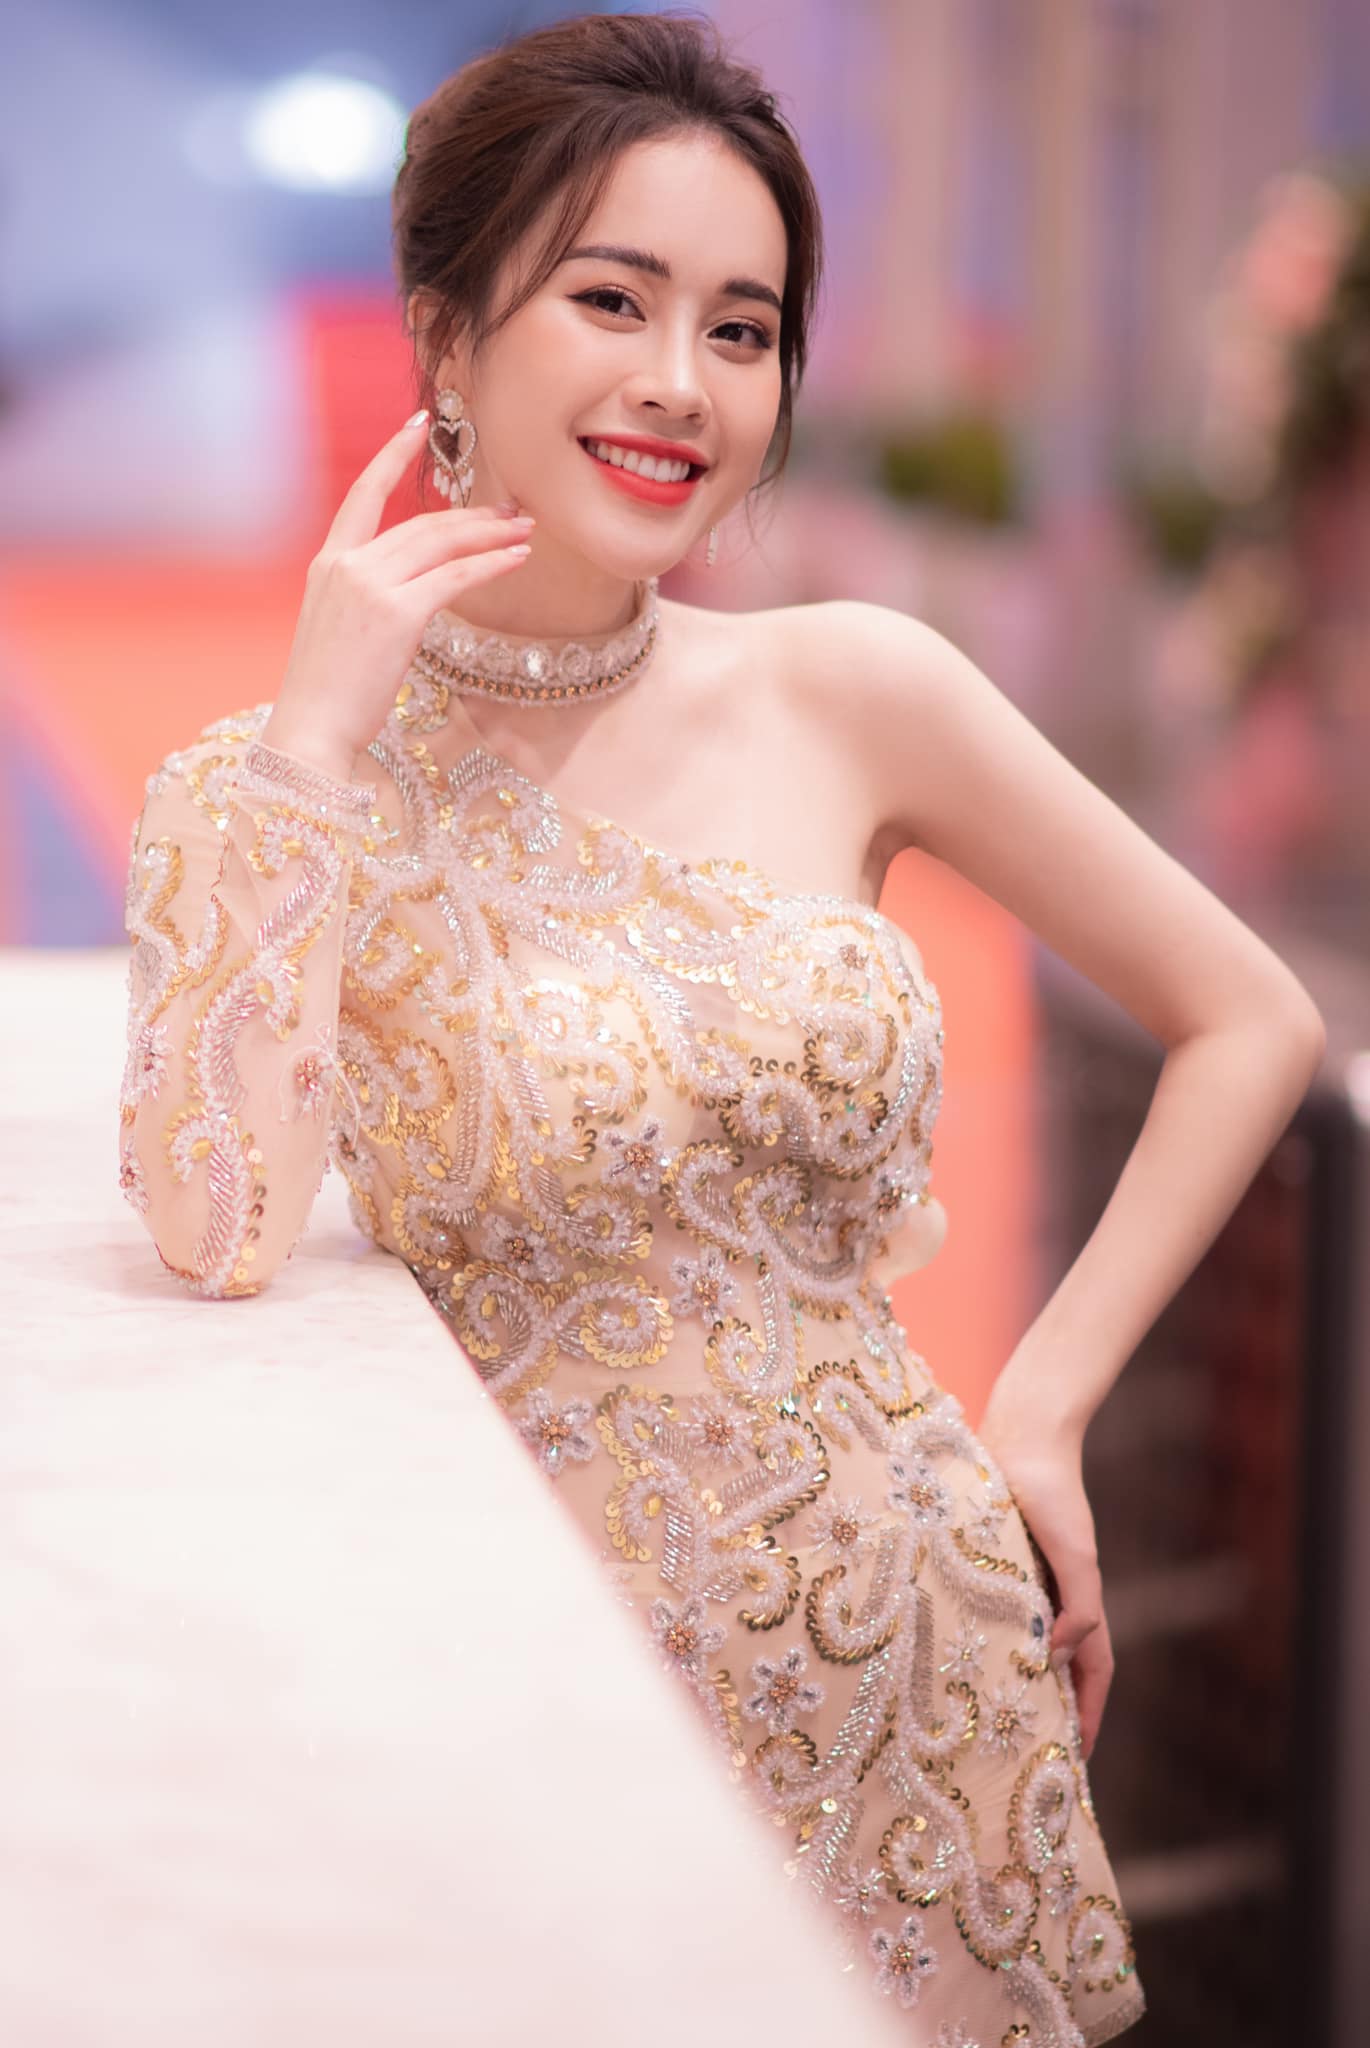 Mới đây, Fanpage Hoa hậu Việt Nam vừa đăng tải hình ảnh của thí sinh tham dự cuộc thi Hoa hậu Việt Nam 2020. Nhiều cư dân mạng đã nhận ra gương mặt quen thuộc của thí sinh xinh đẹp chính là Mai Phương - MC của "Bữa trưa vui vẻ" VTV6.